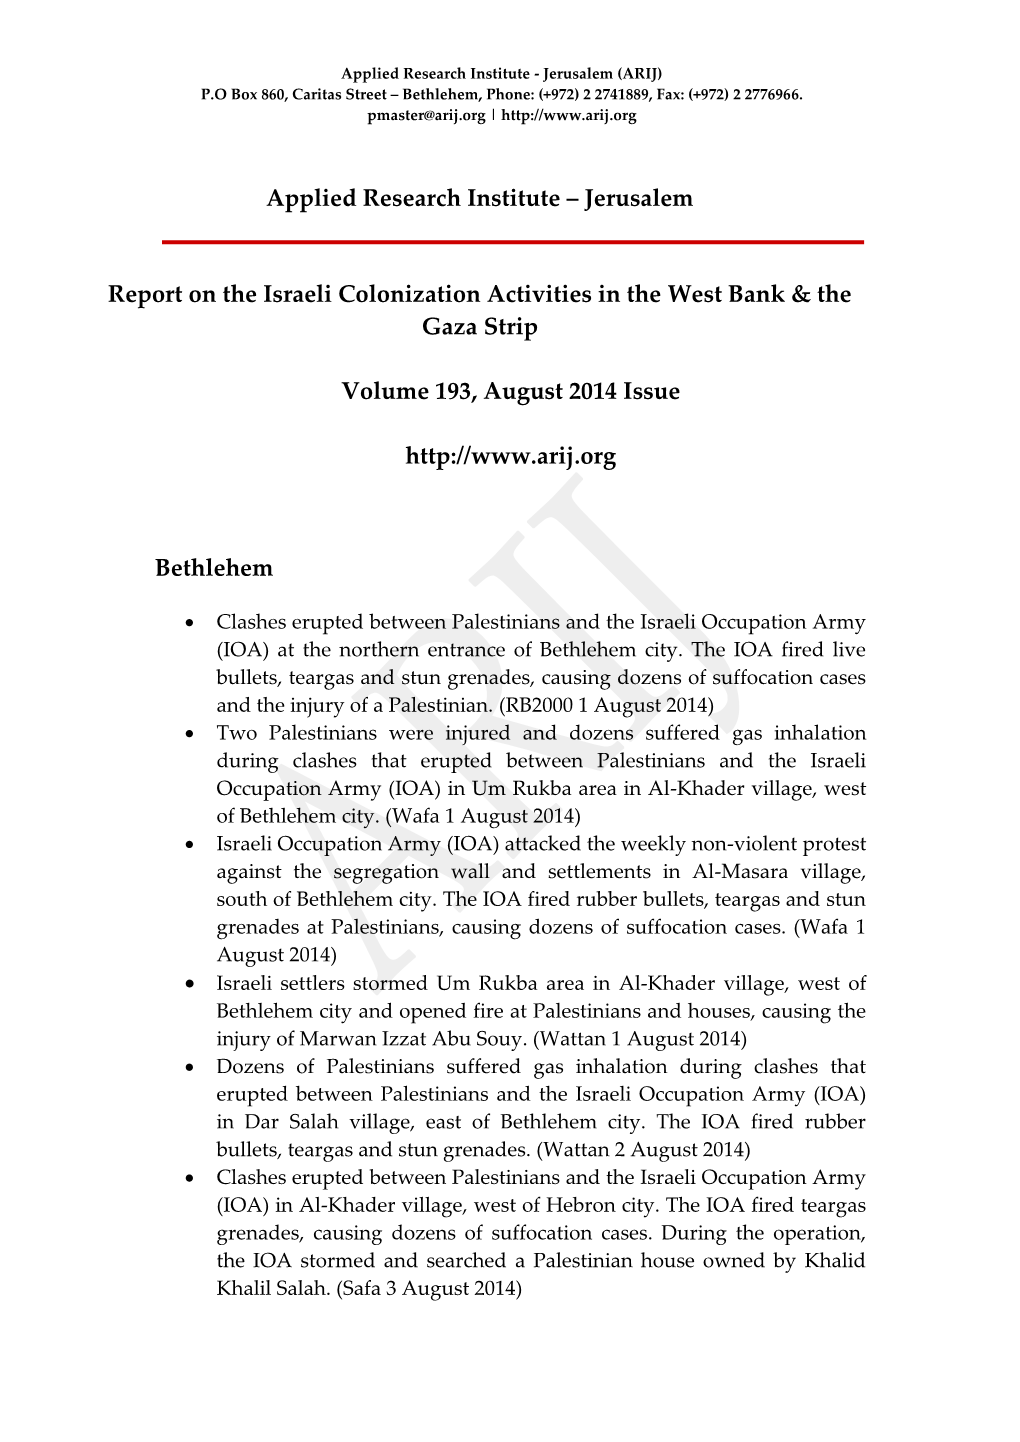 Volume 193, August 2014 Issue